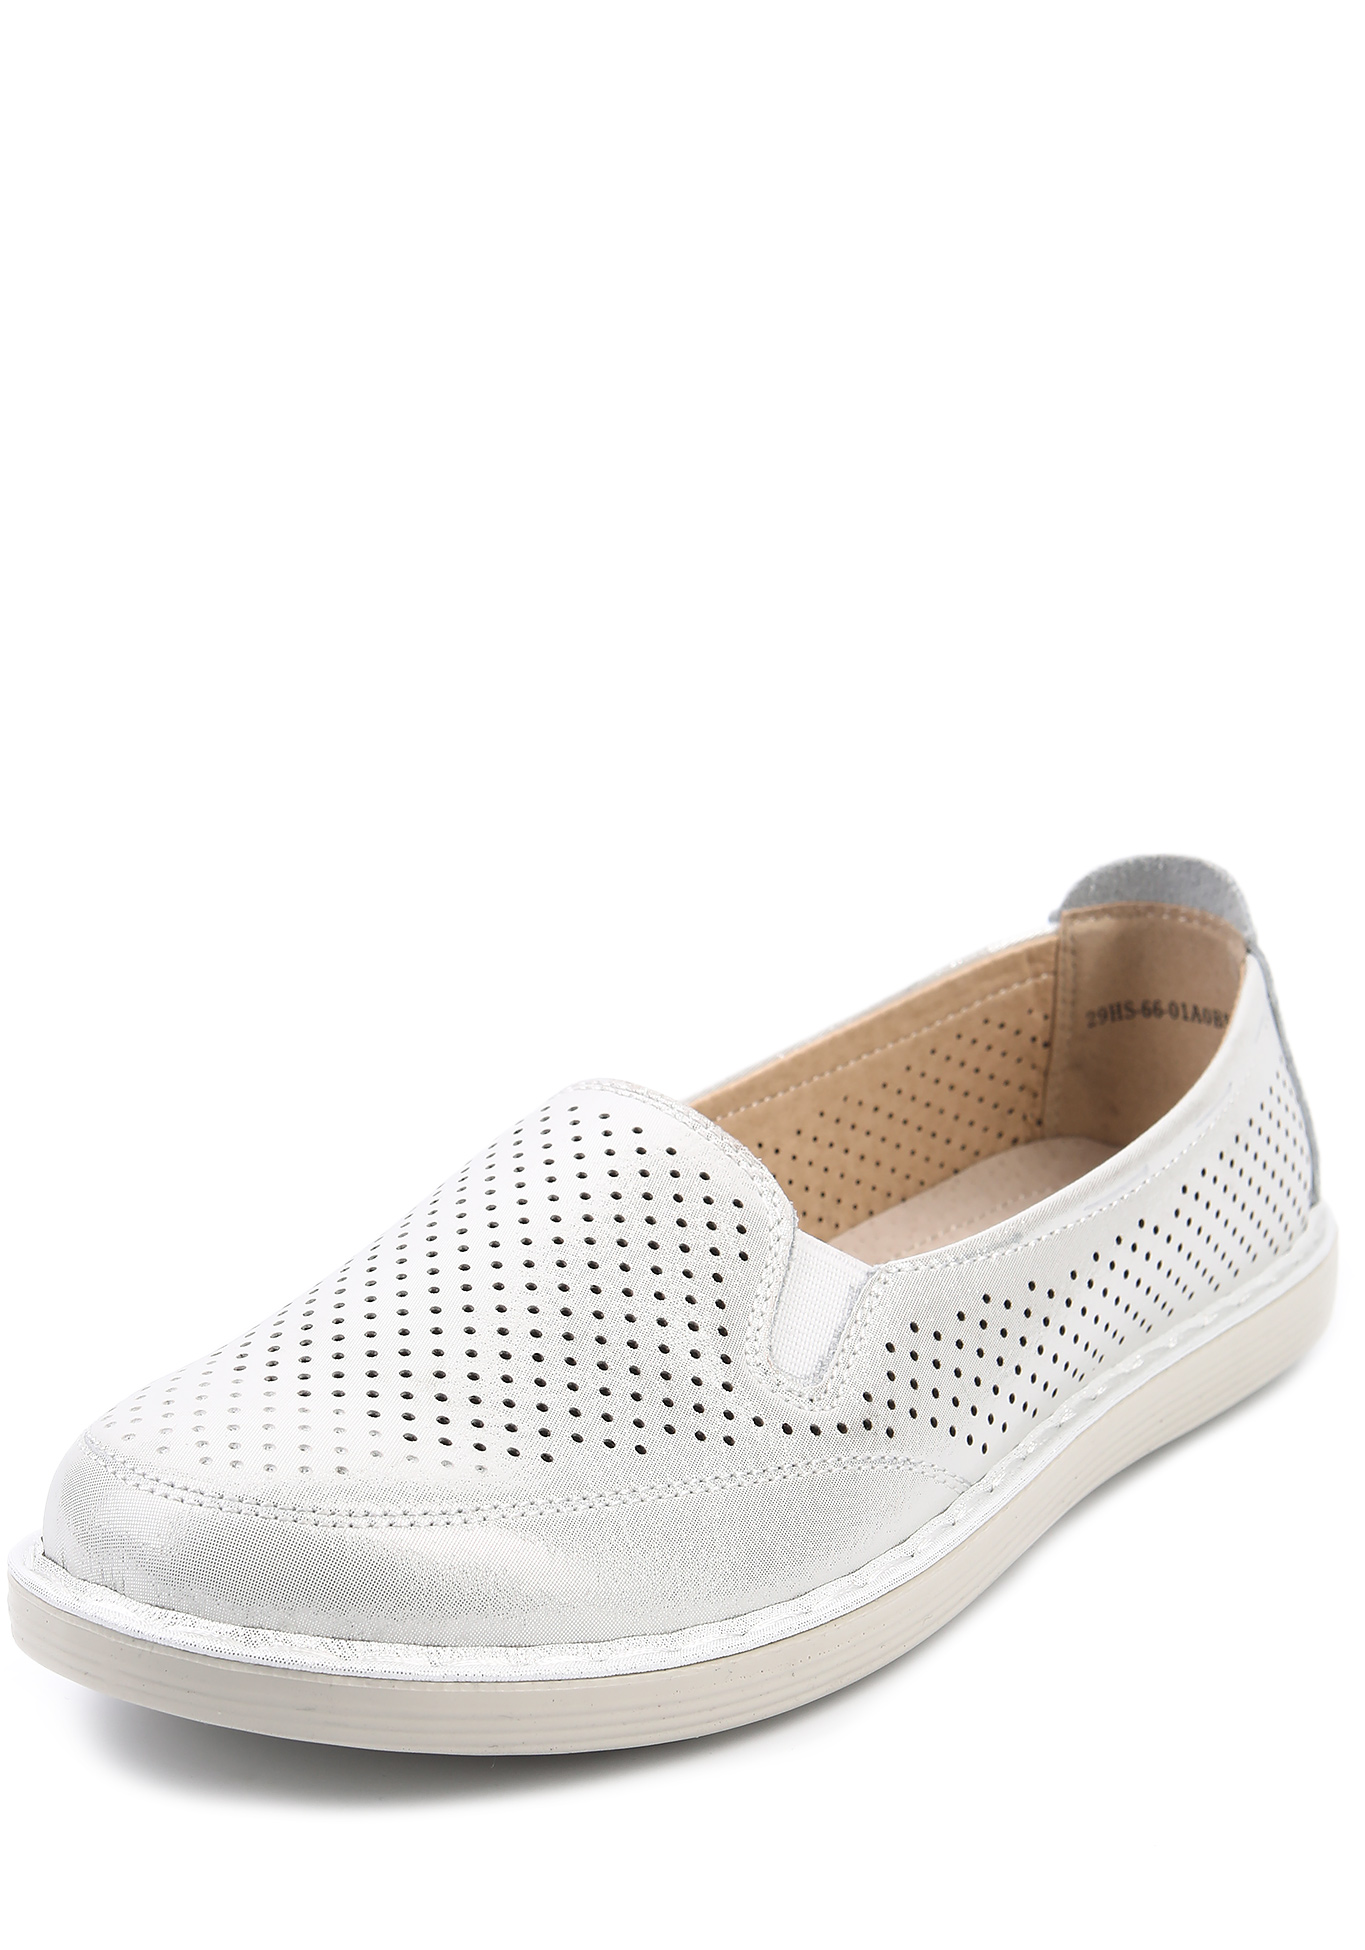 Слипоны летние женские "Финна" 4x4 shoes, размер 36, цвет белый